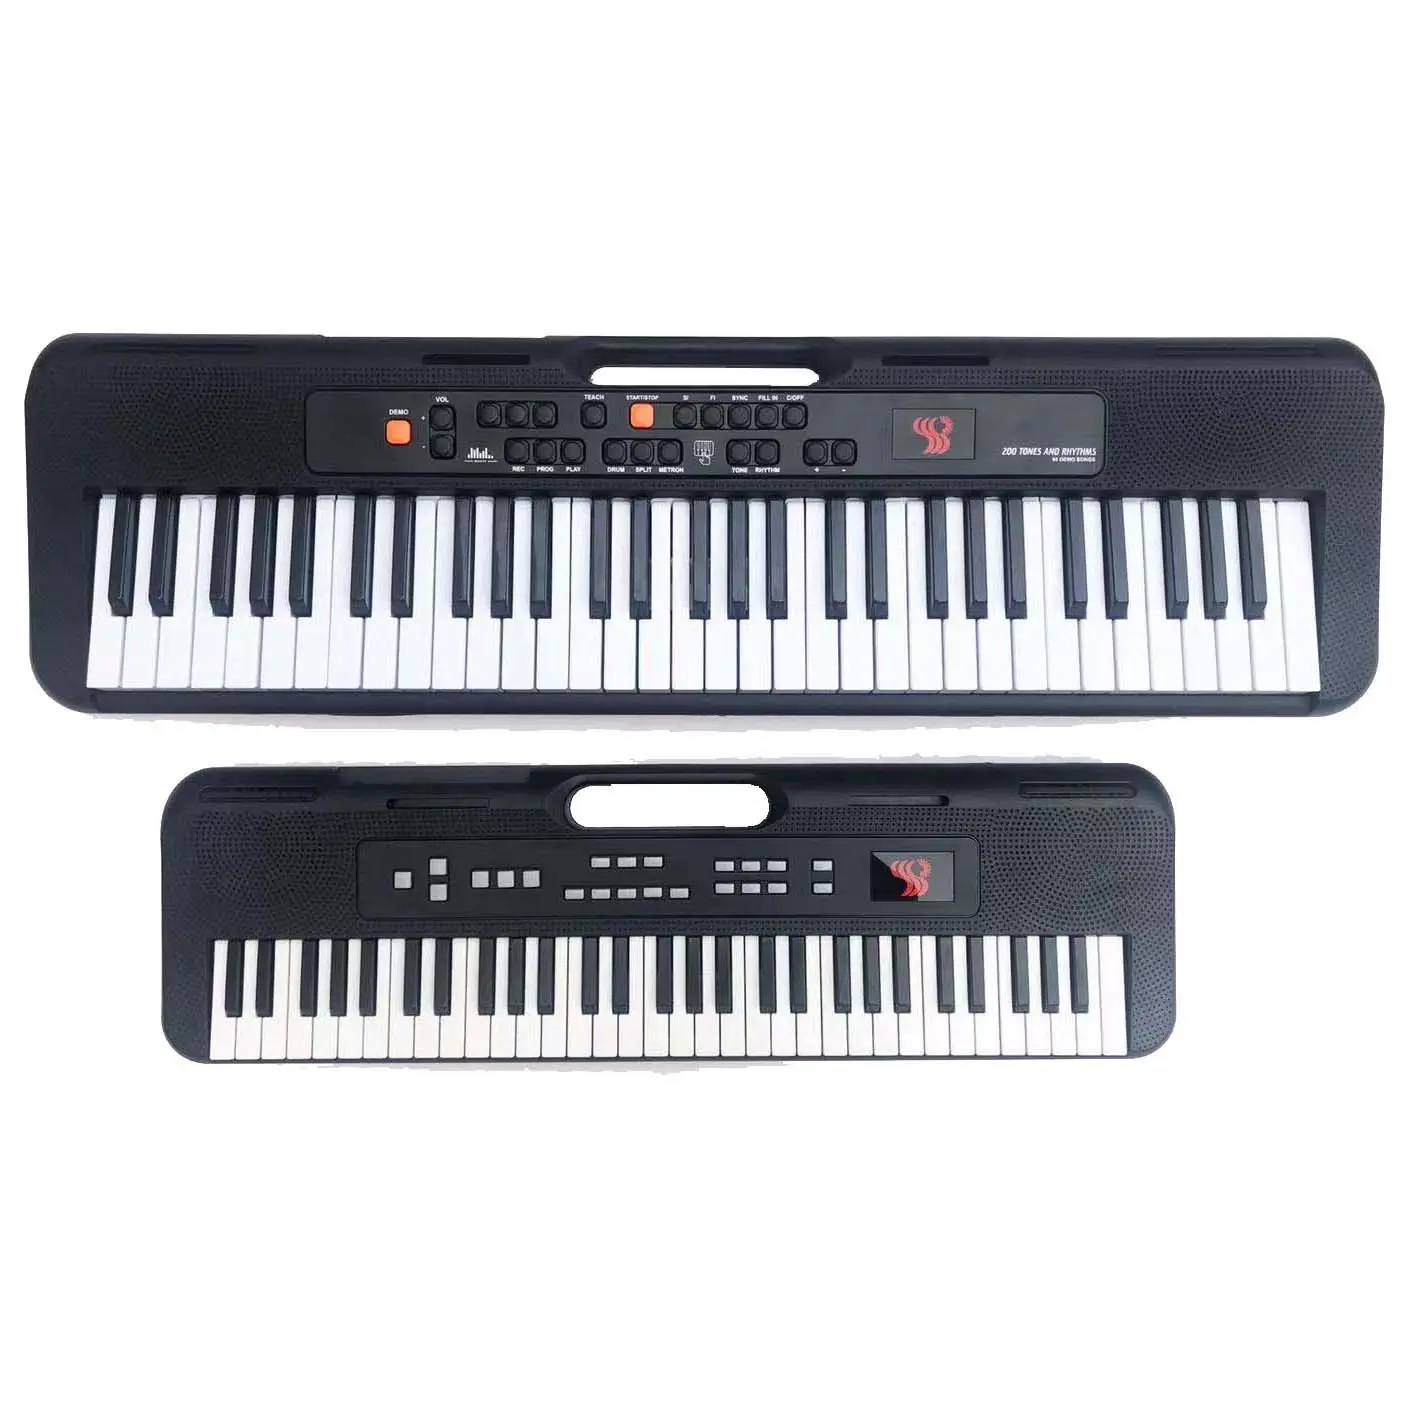 Новинка, 61 клавиша, электронная клавиатура, портативная музыкальная клавиатура, музыкальный синтезатор tecladosp music